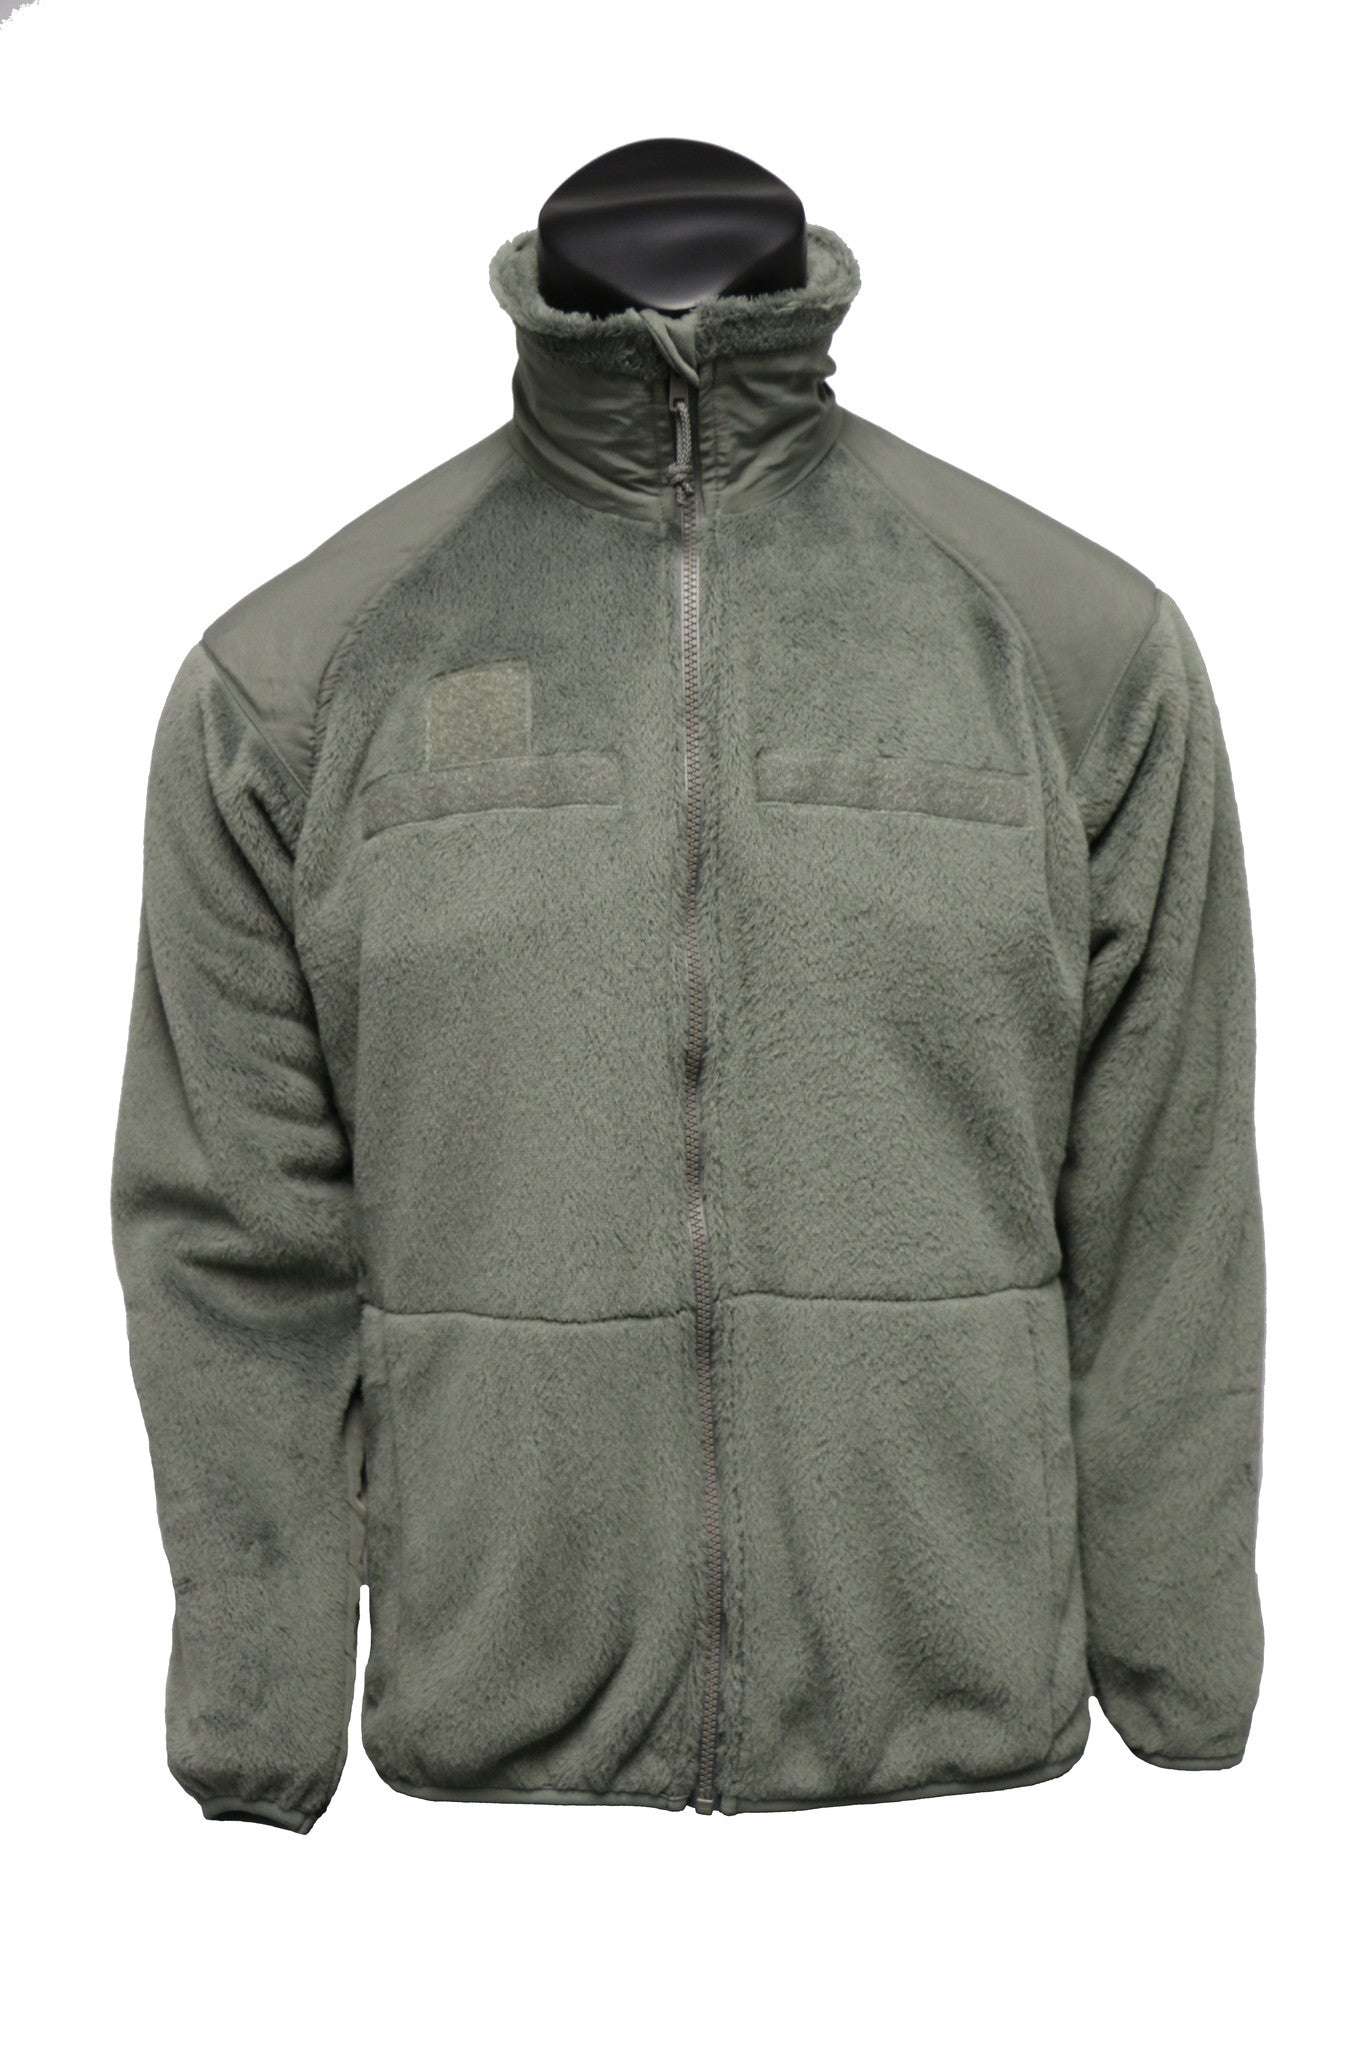 High Loft Fleece Jacket - LLC Kenyon Consumer Products